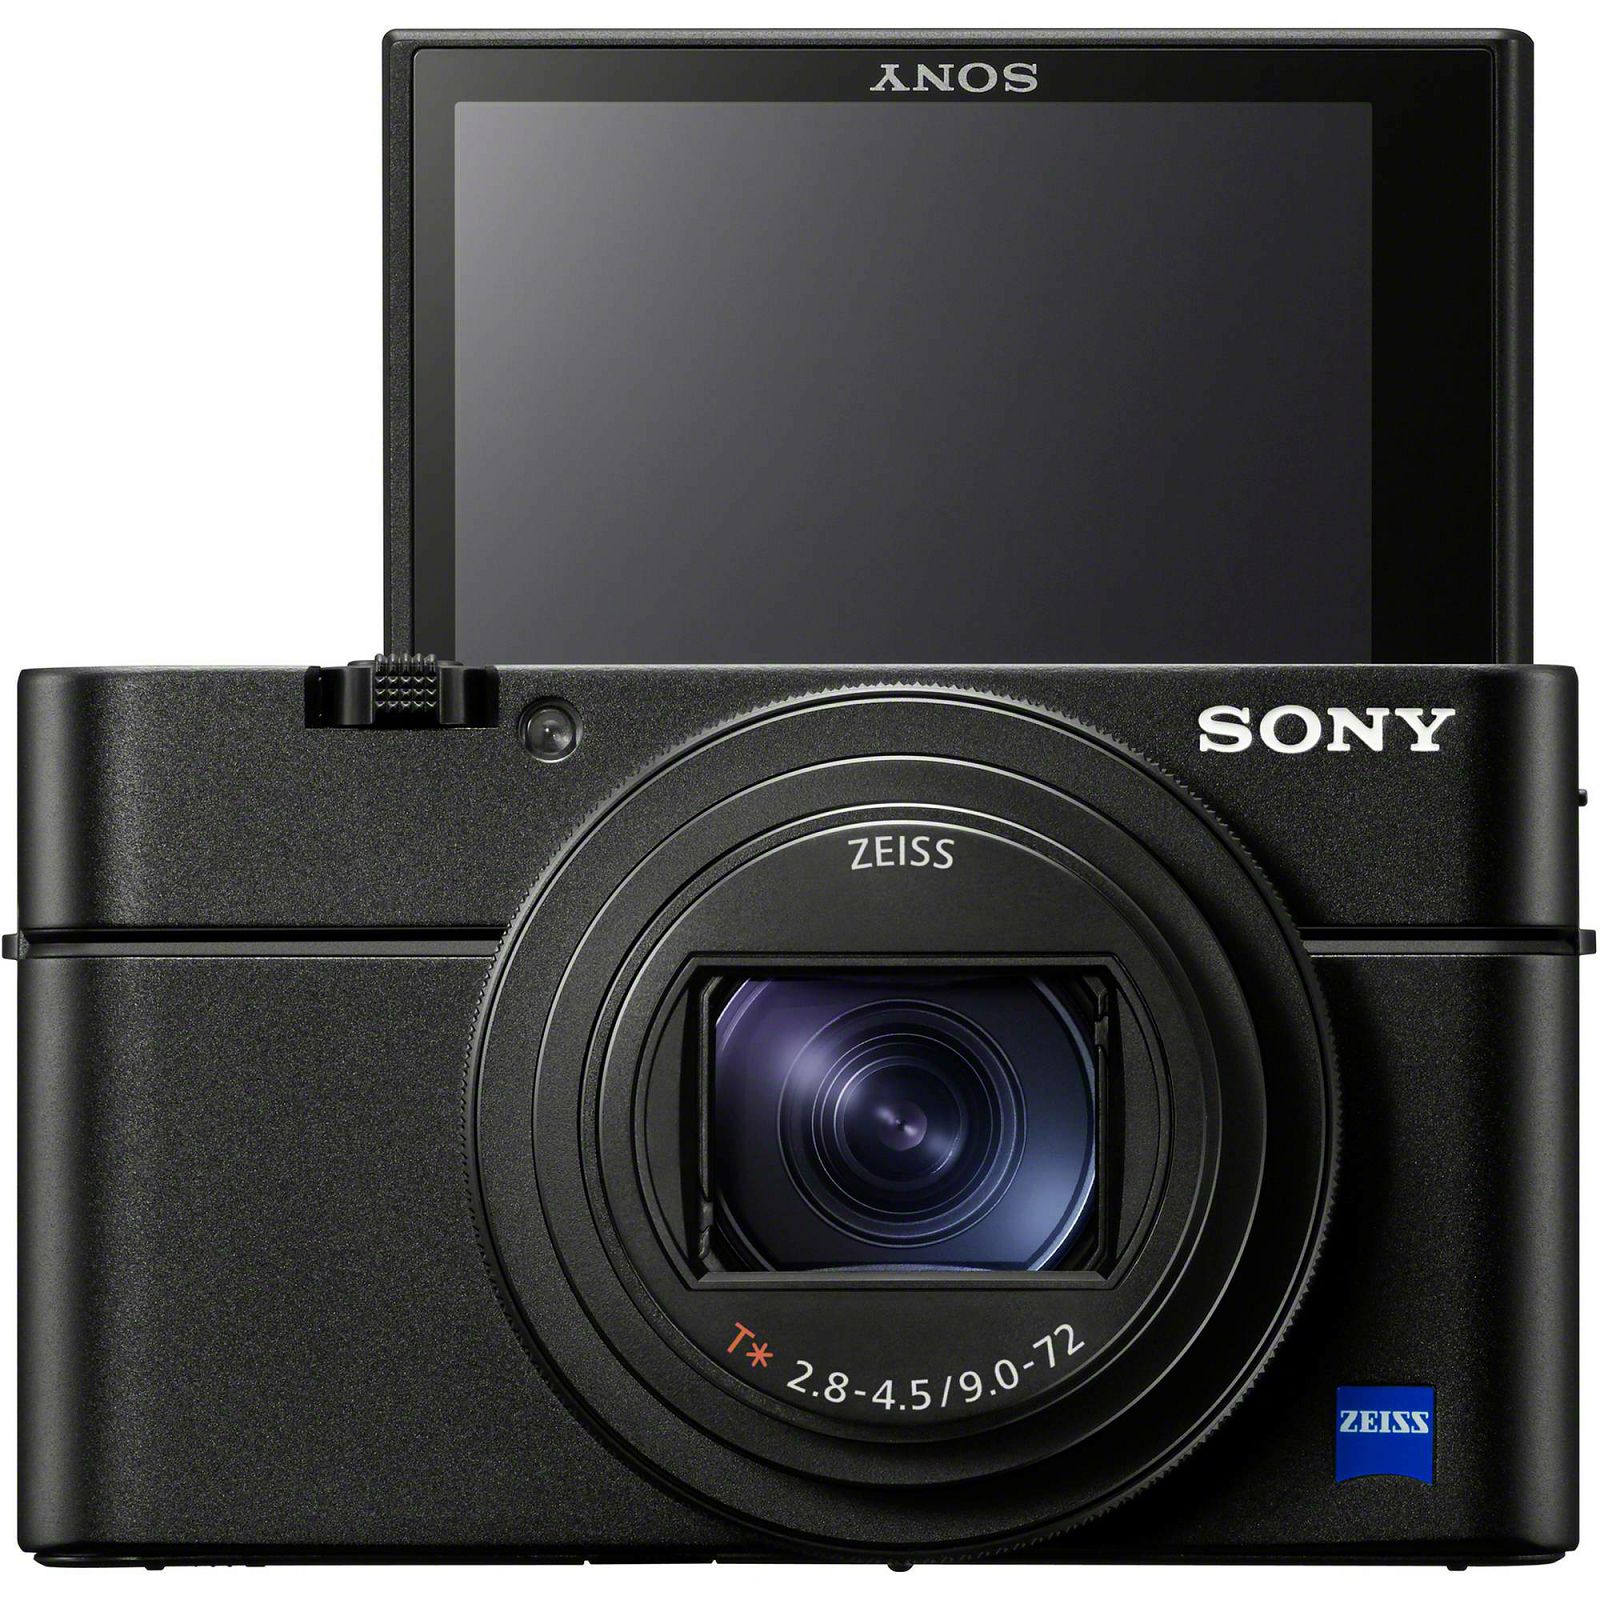 Sony Cyber-shot DSC-RX100 M7 Black crni Digitalni fotoaparat s integriranim objektivom Carl Zeiss Vario-Sonnar T* 9-72mm f/2.8-4.5 Digital Camera (DSCRX100M7.CE3) - LJETNA UŠTEDA 